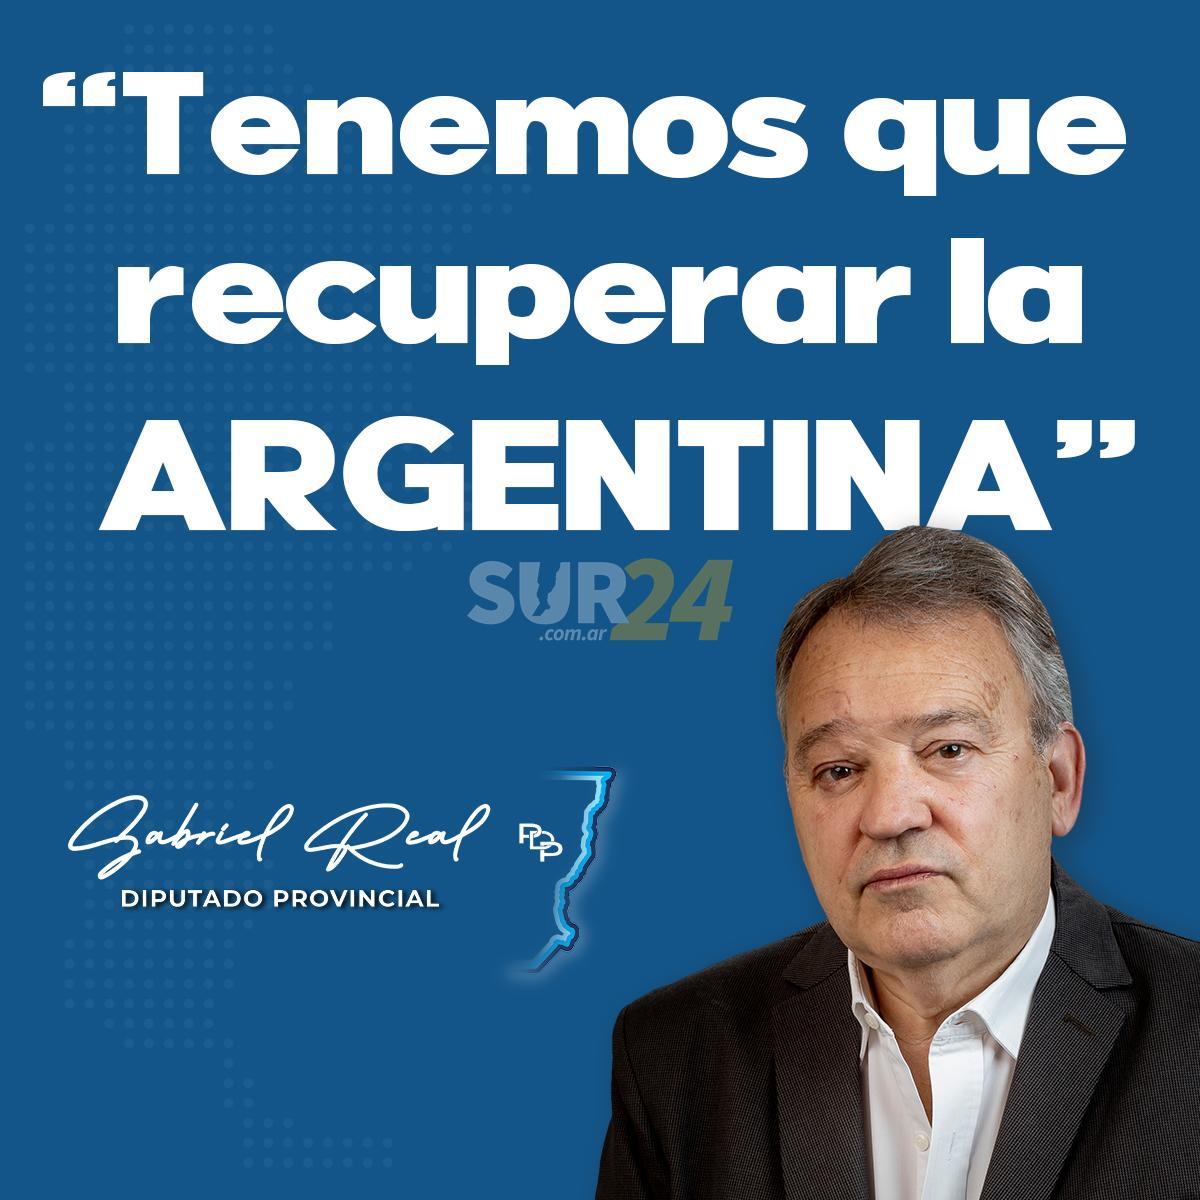 Gabriel Real: “Tenemos que recuperar la Argentina”